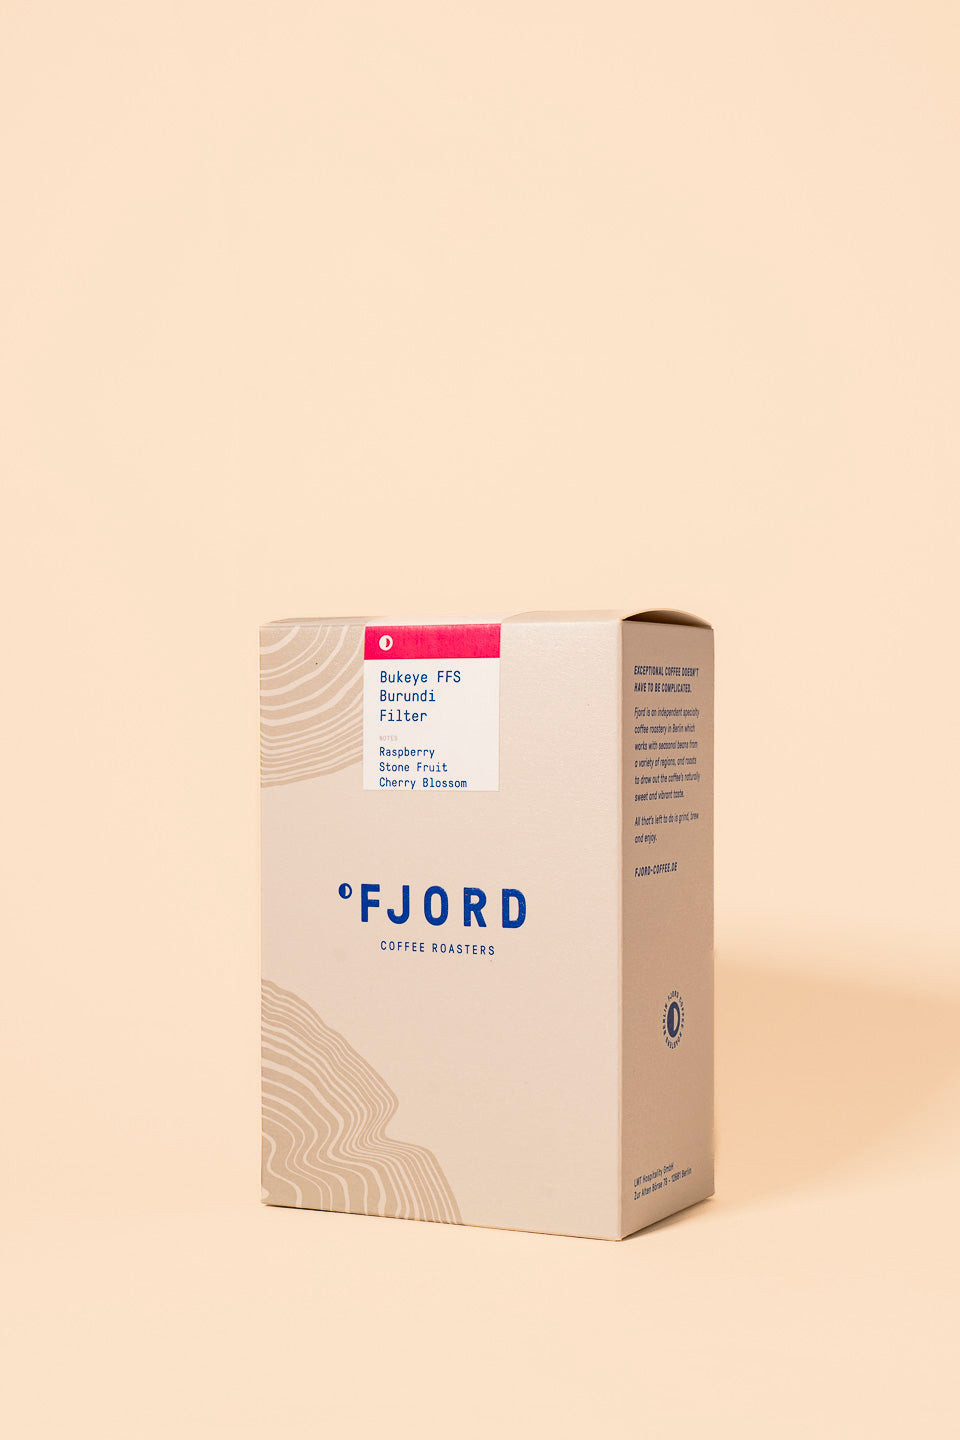 Fjord Coffee | Burundi, Bukeye FFS - Filter 250g